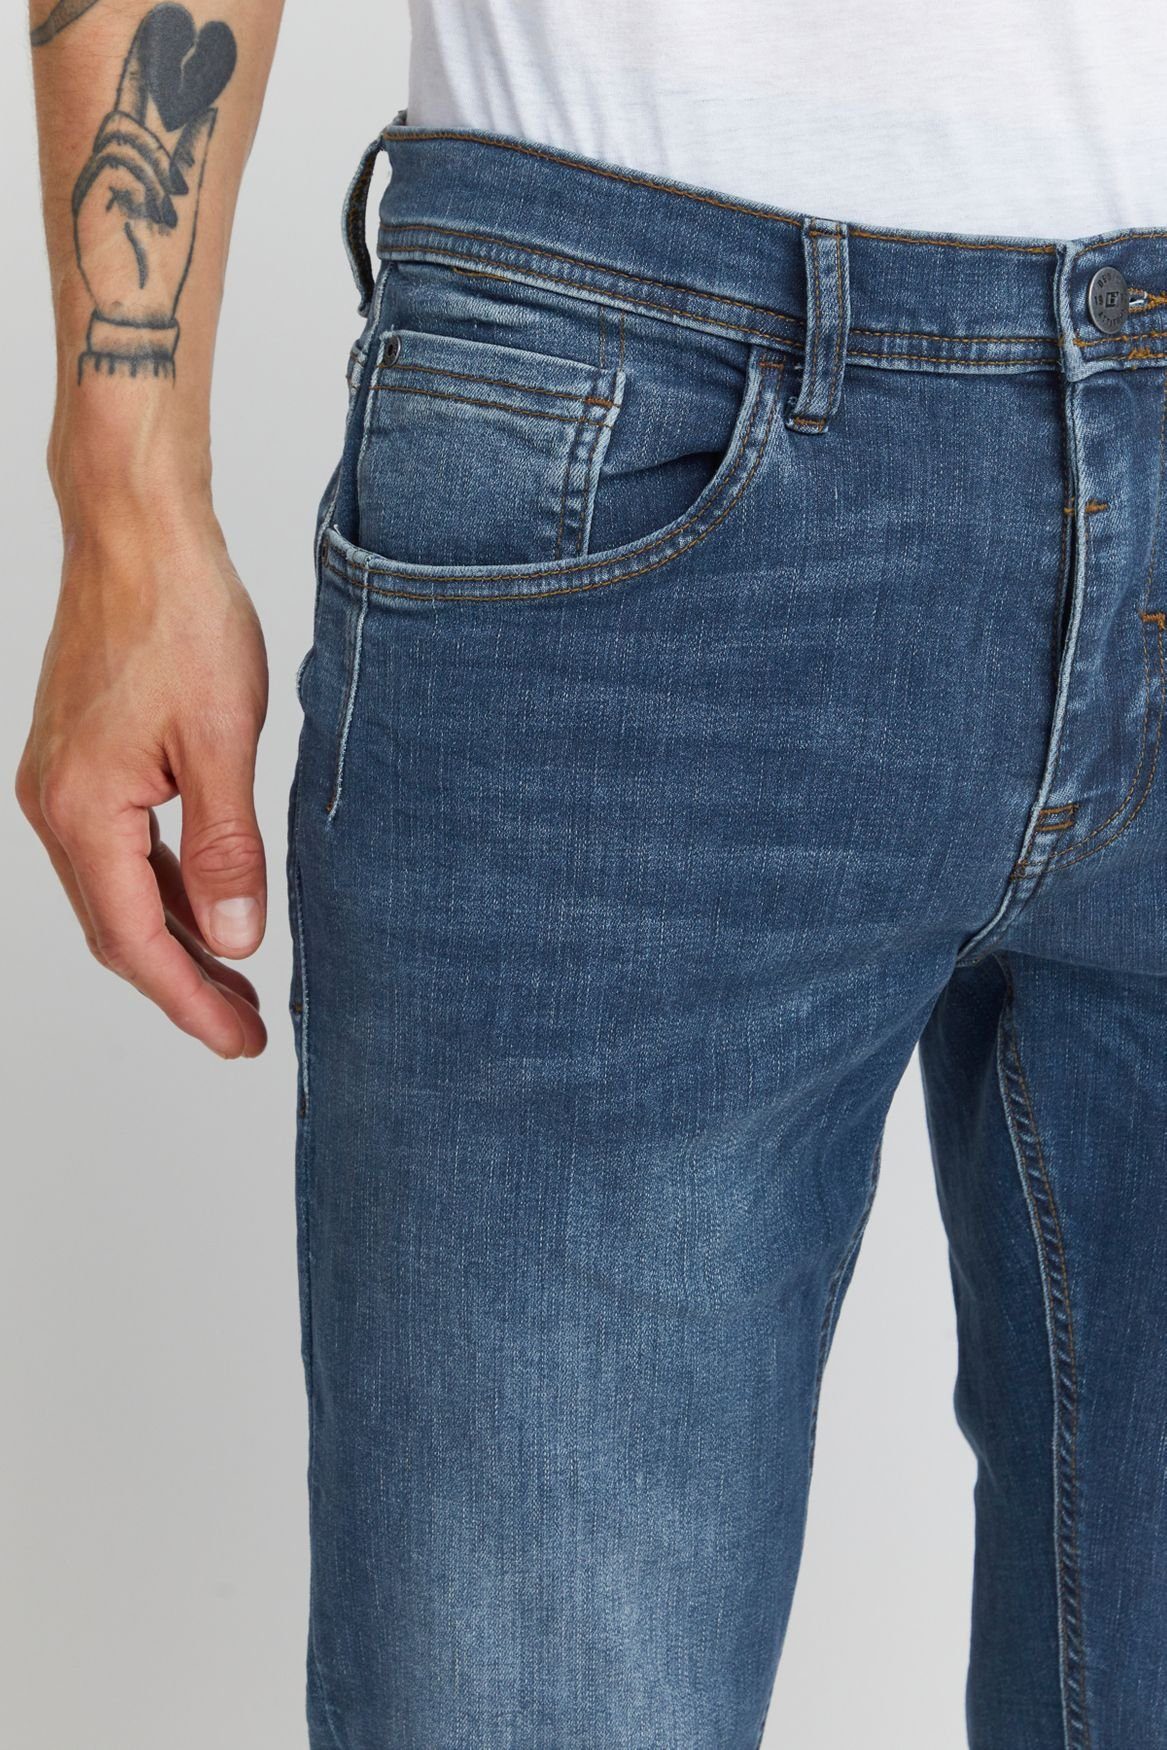 Hose Slim-fit-Jeans Washed Fit Denim in TWISTER FIT Slim 5196 Basic Blau Blend Jeans Stoned